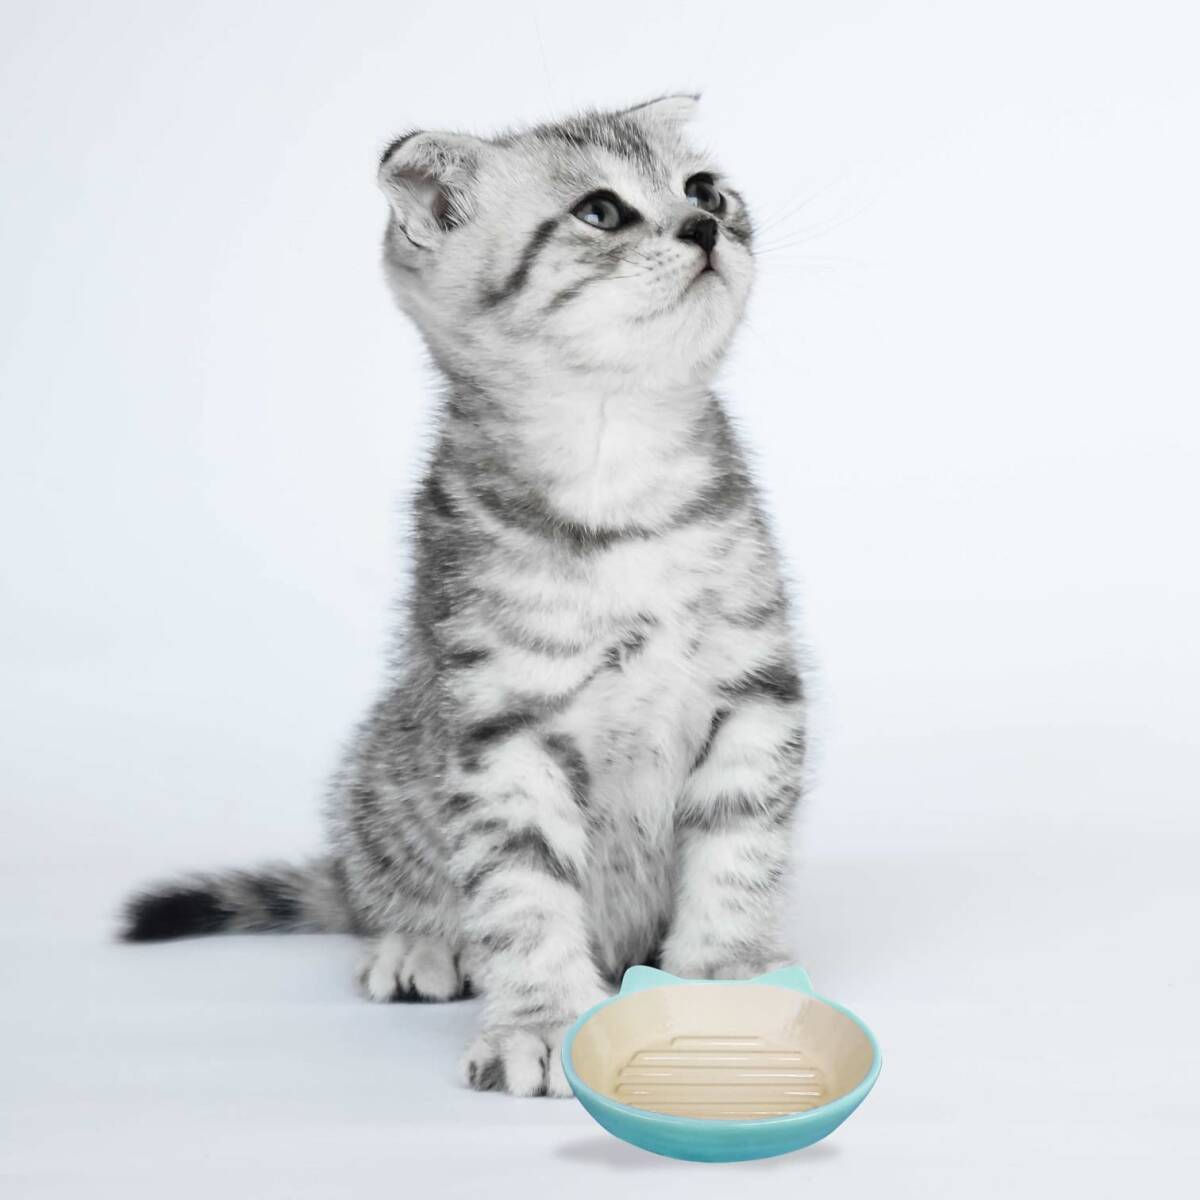 Pet rageous designs( домашнее животное reji мужской дизайн ) кошка для посуда легкий Dyna - кошка тарелка голубой 